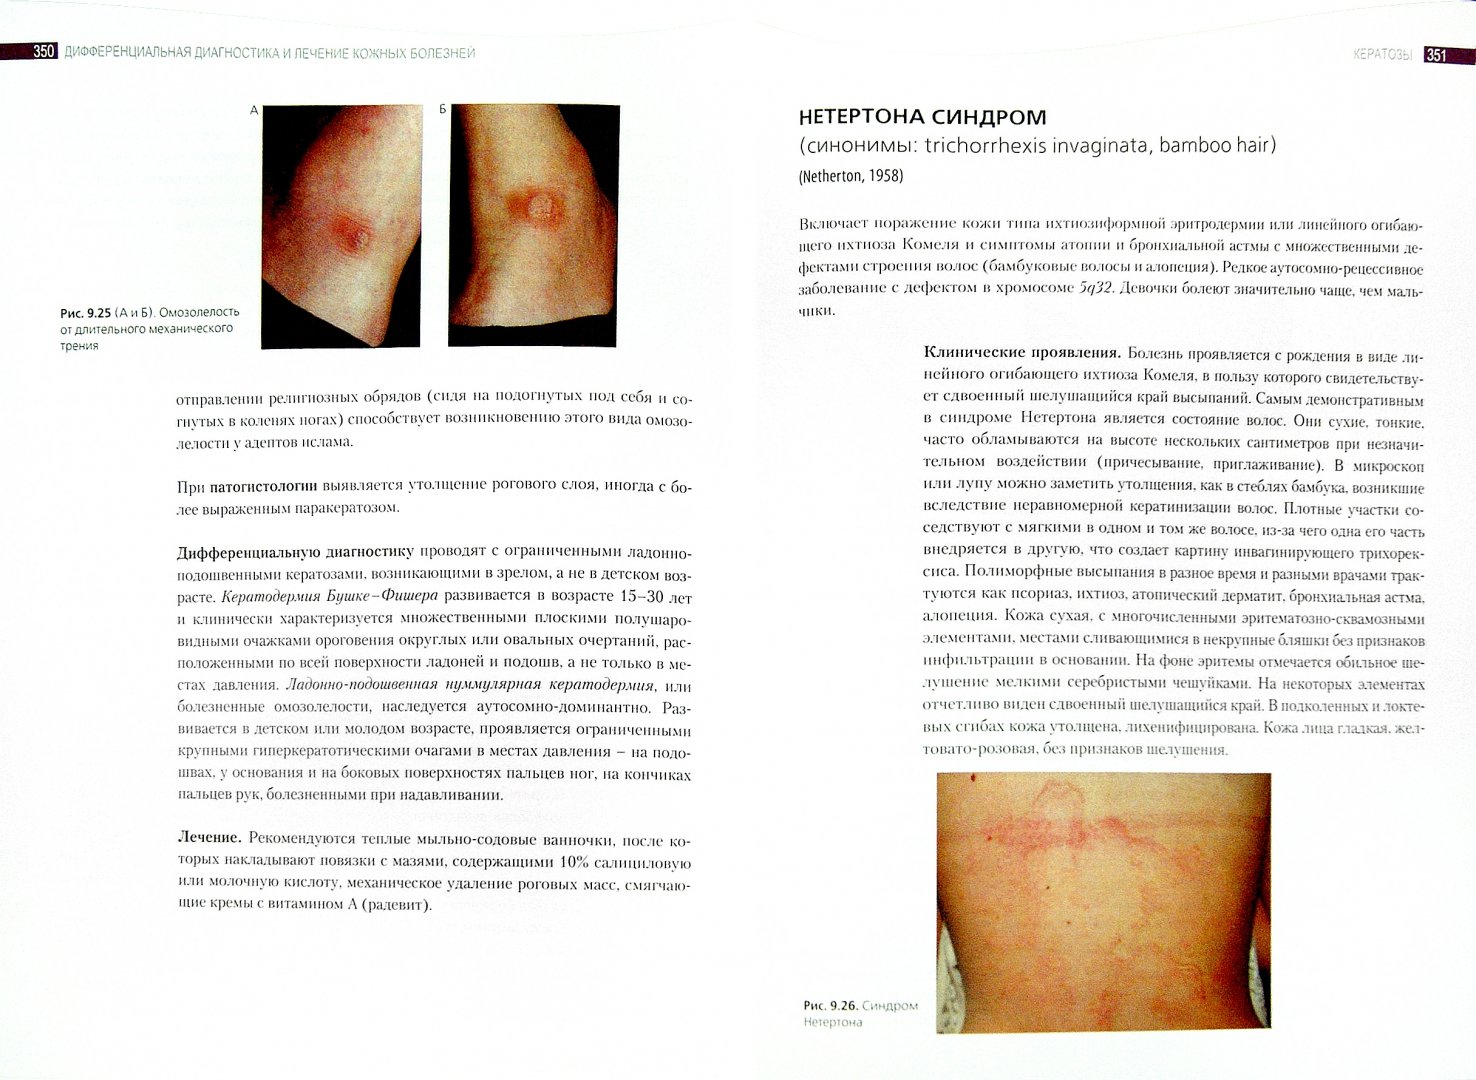 Иллюстрация 1 из 11 для Дифференциальная диагностика и лечение кожных болезней - Потекаев, Акимов | Лабиринт - книги. Источник: Лабиринт